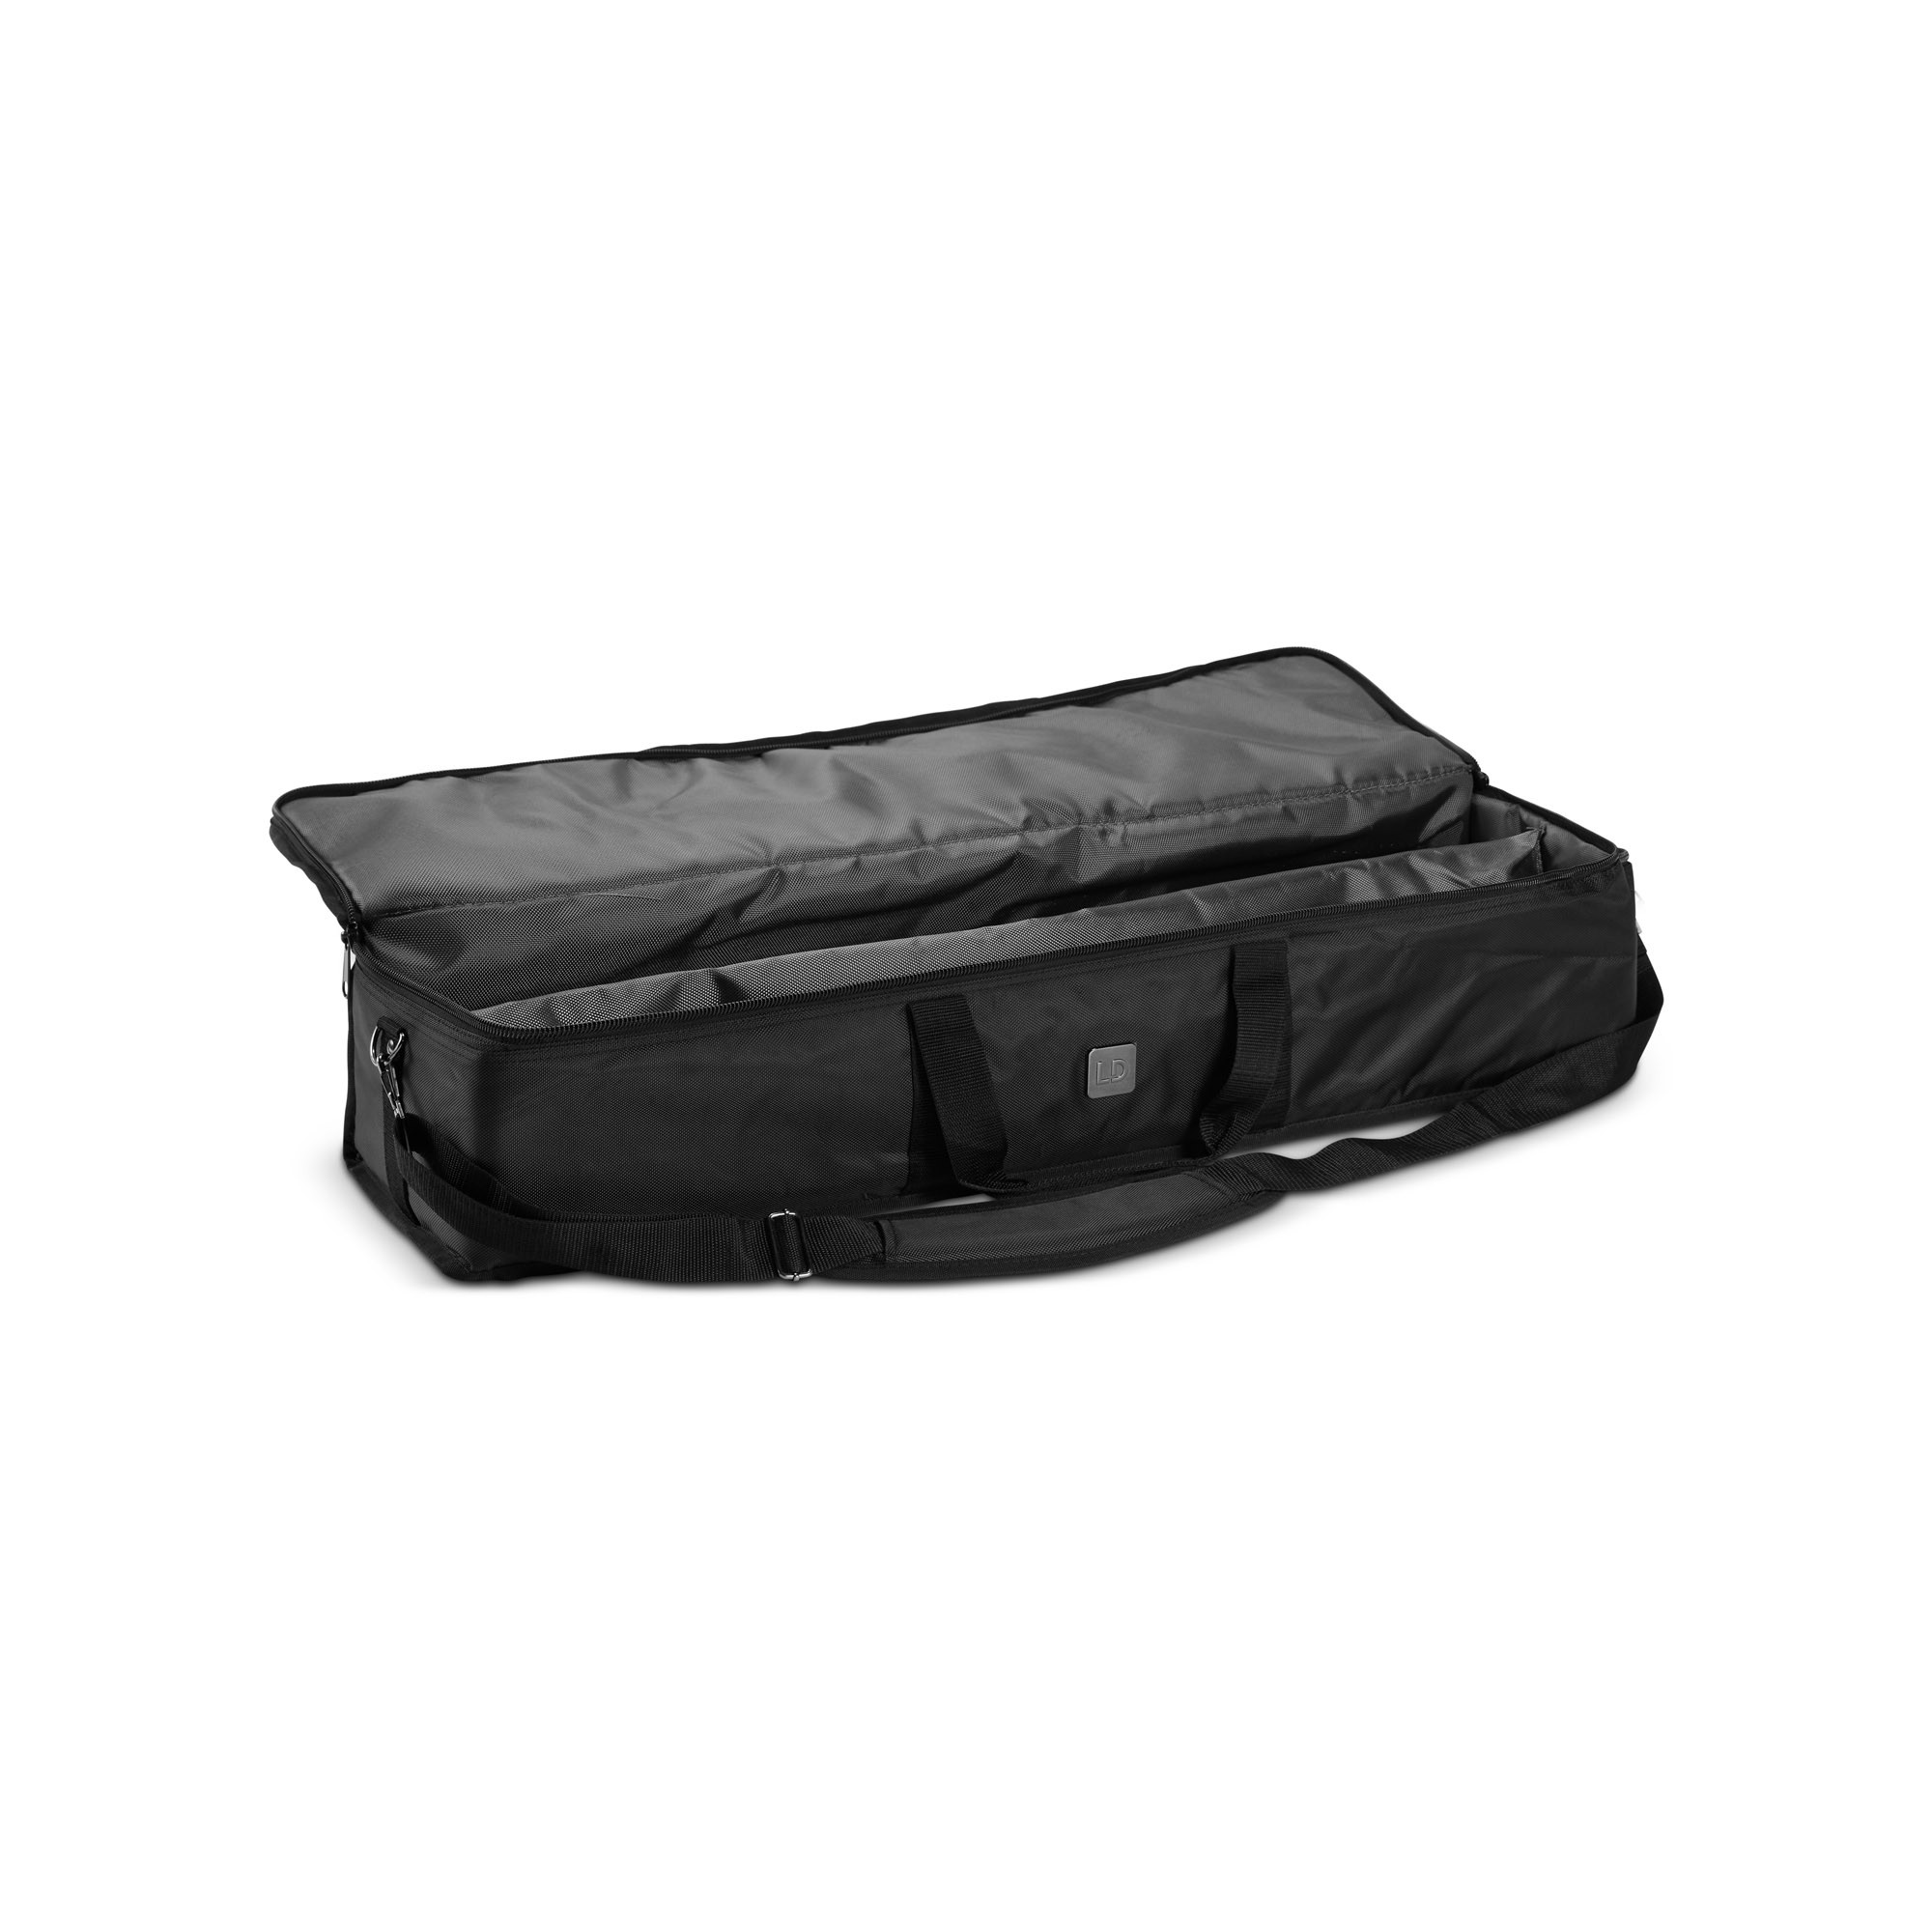 Ld Systems Maui 28 G3 Sat Bag - Bag for speakers & subwoofer - Variation 2